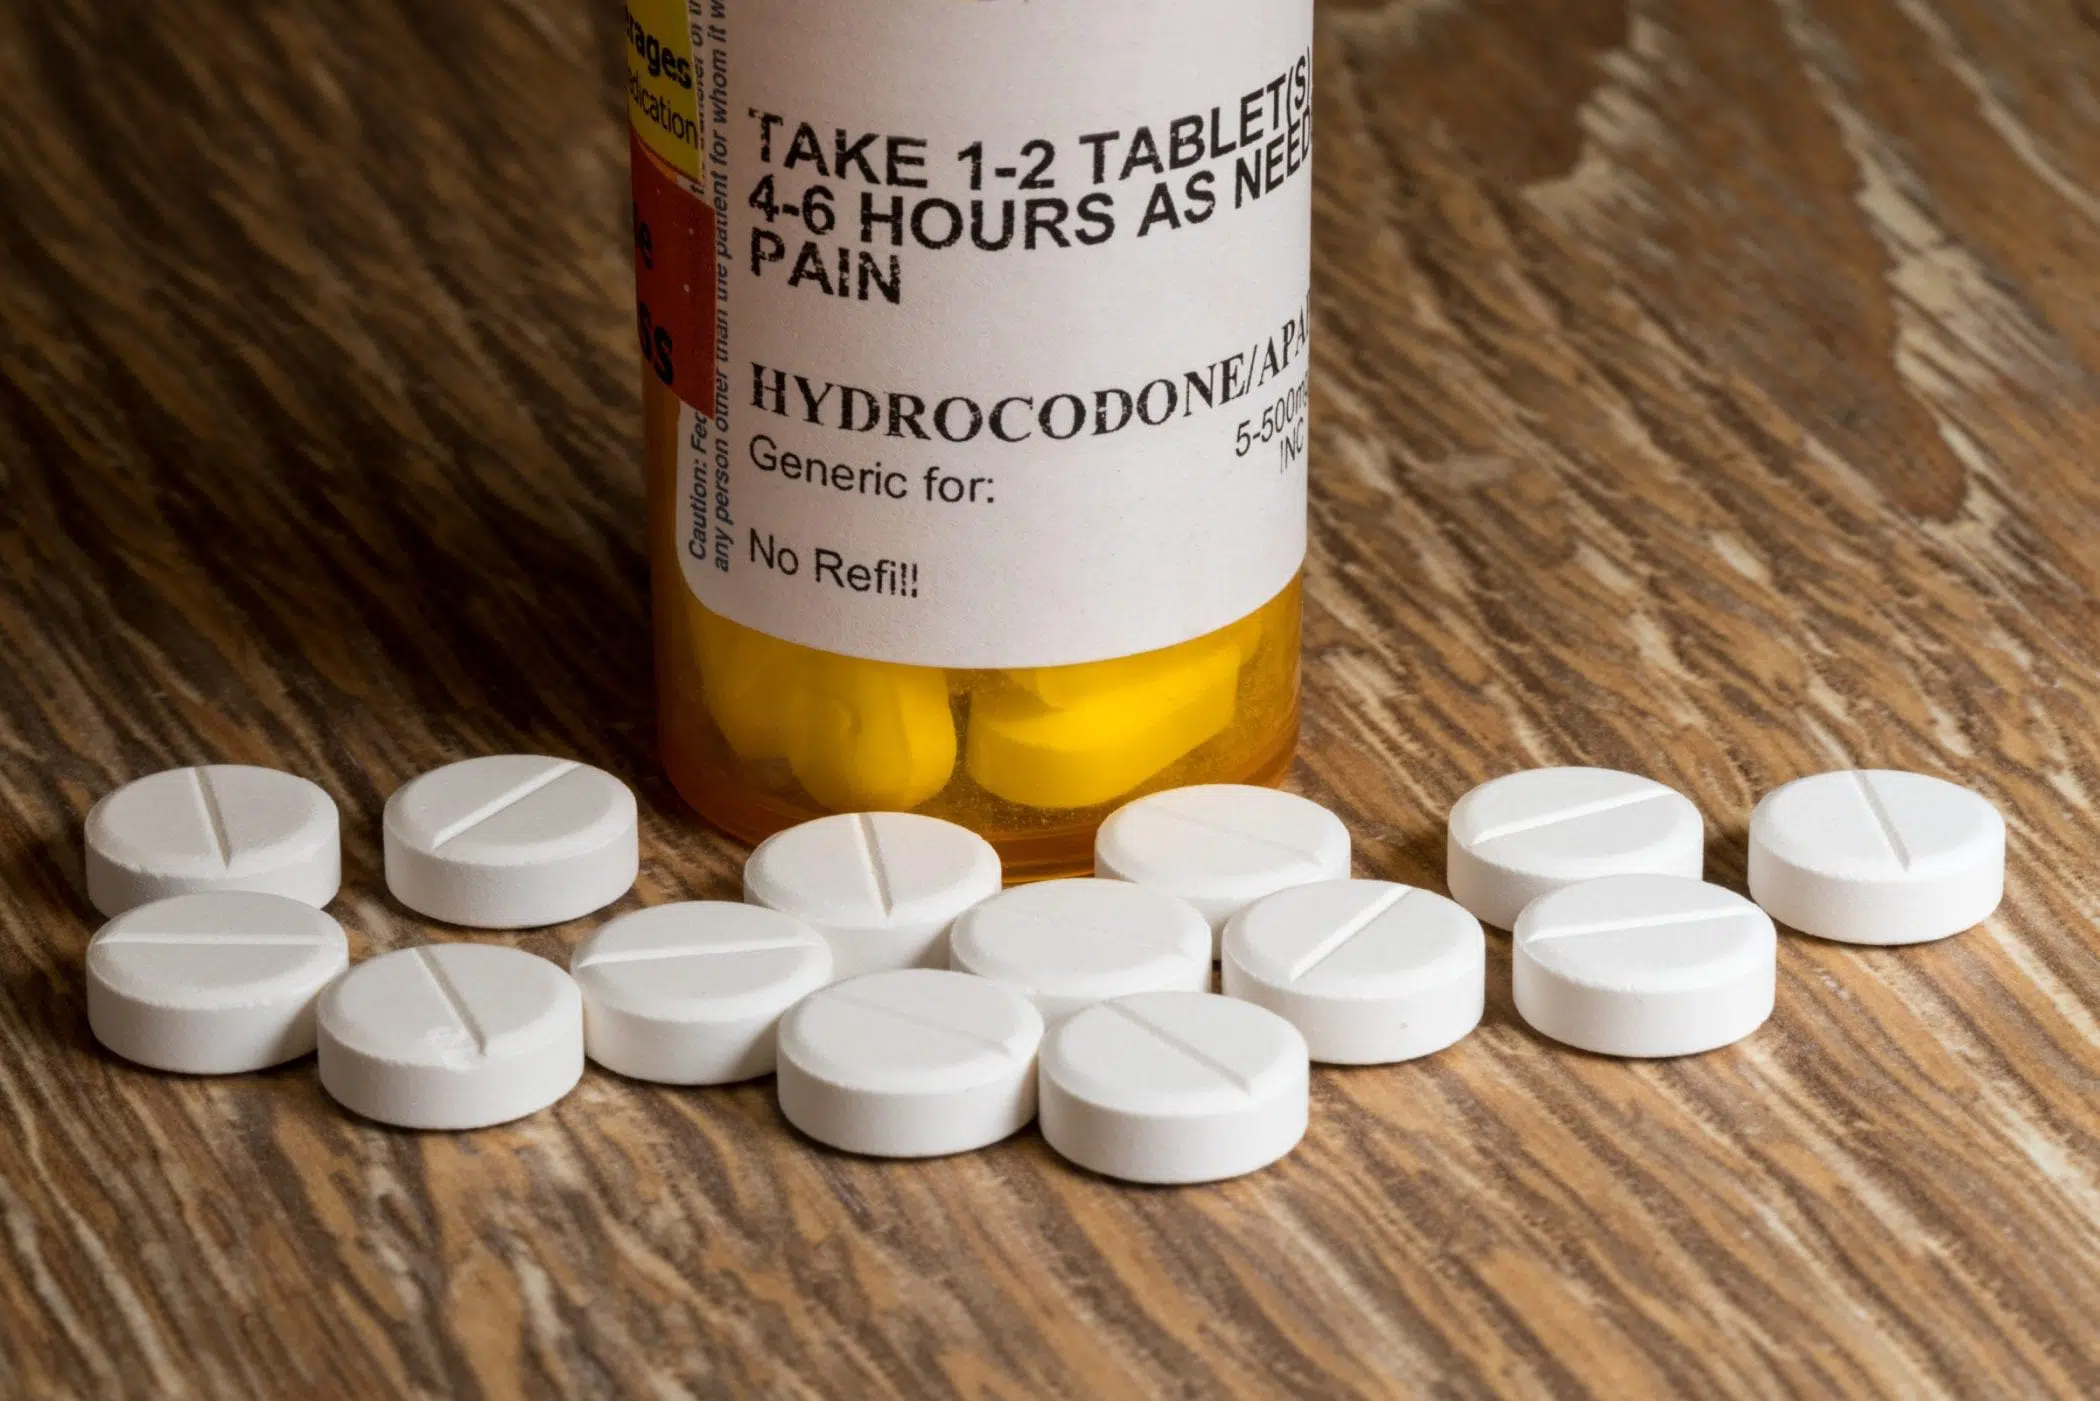 Vicodin Prescription Drug Abuse